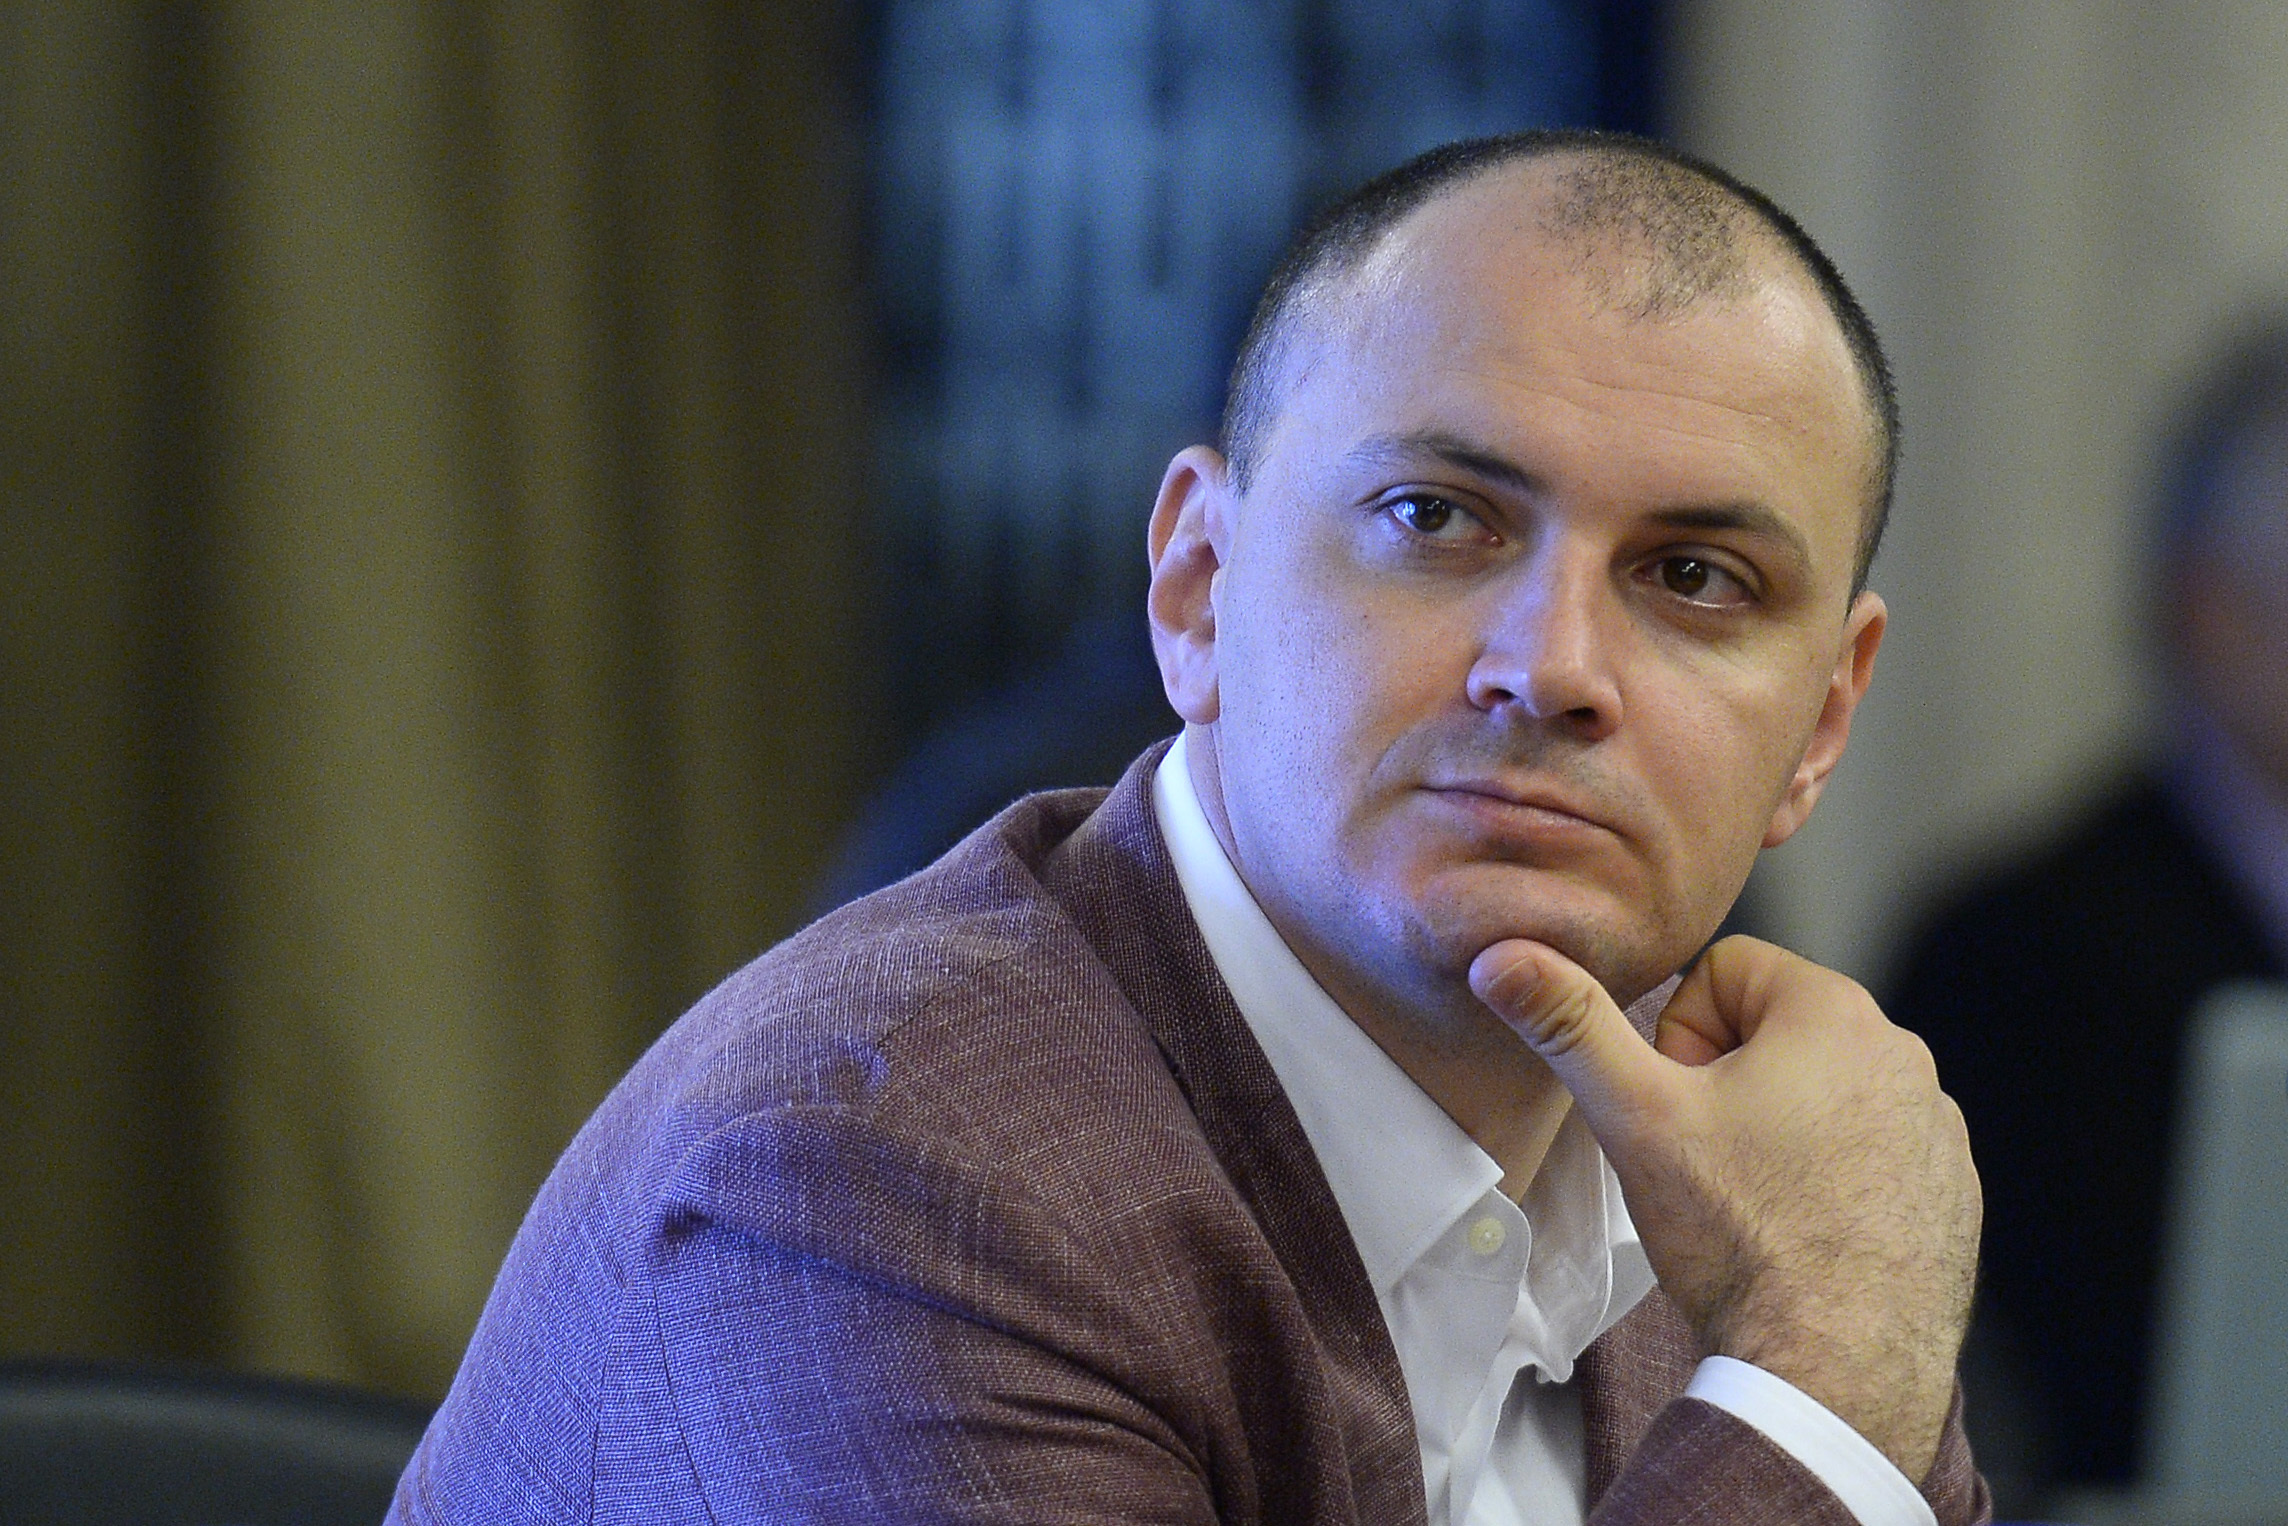 Măsura controlului judiciar, prelungită cu încă 60 de zile pentru deputatul Sebastian Ghiţă